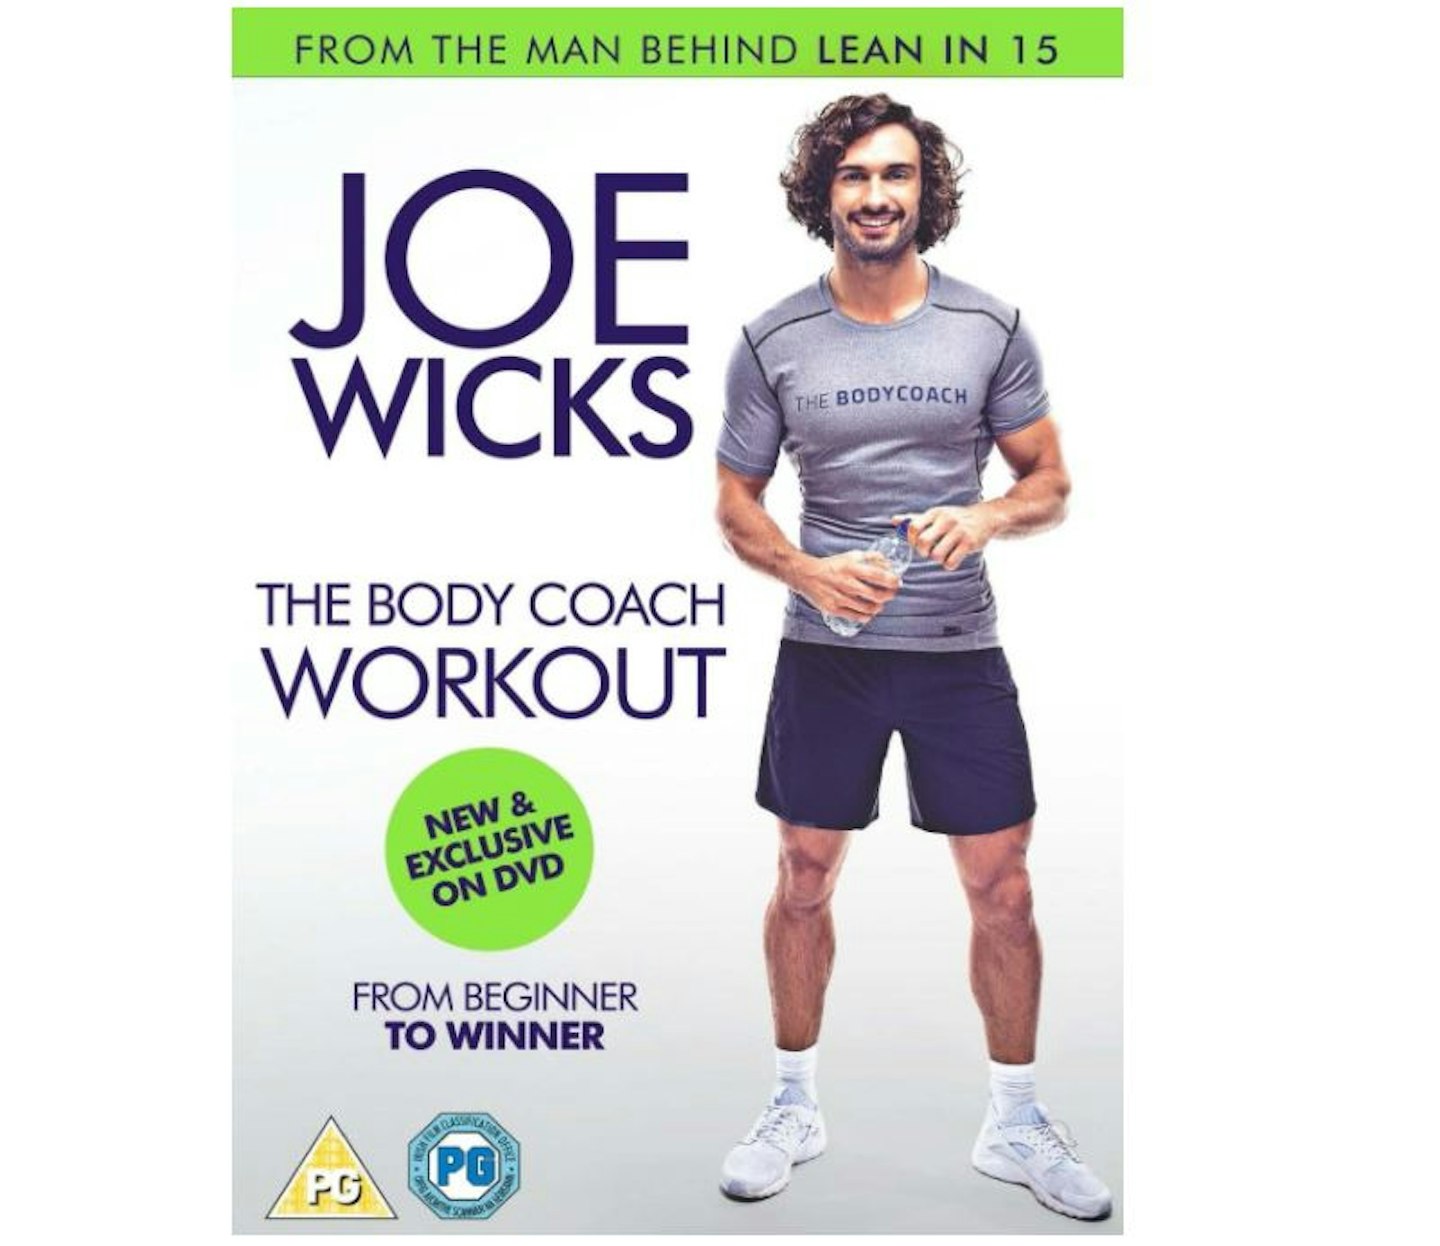 Joe Wicks The Body Coach Workout DVD